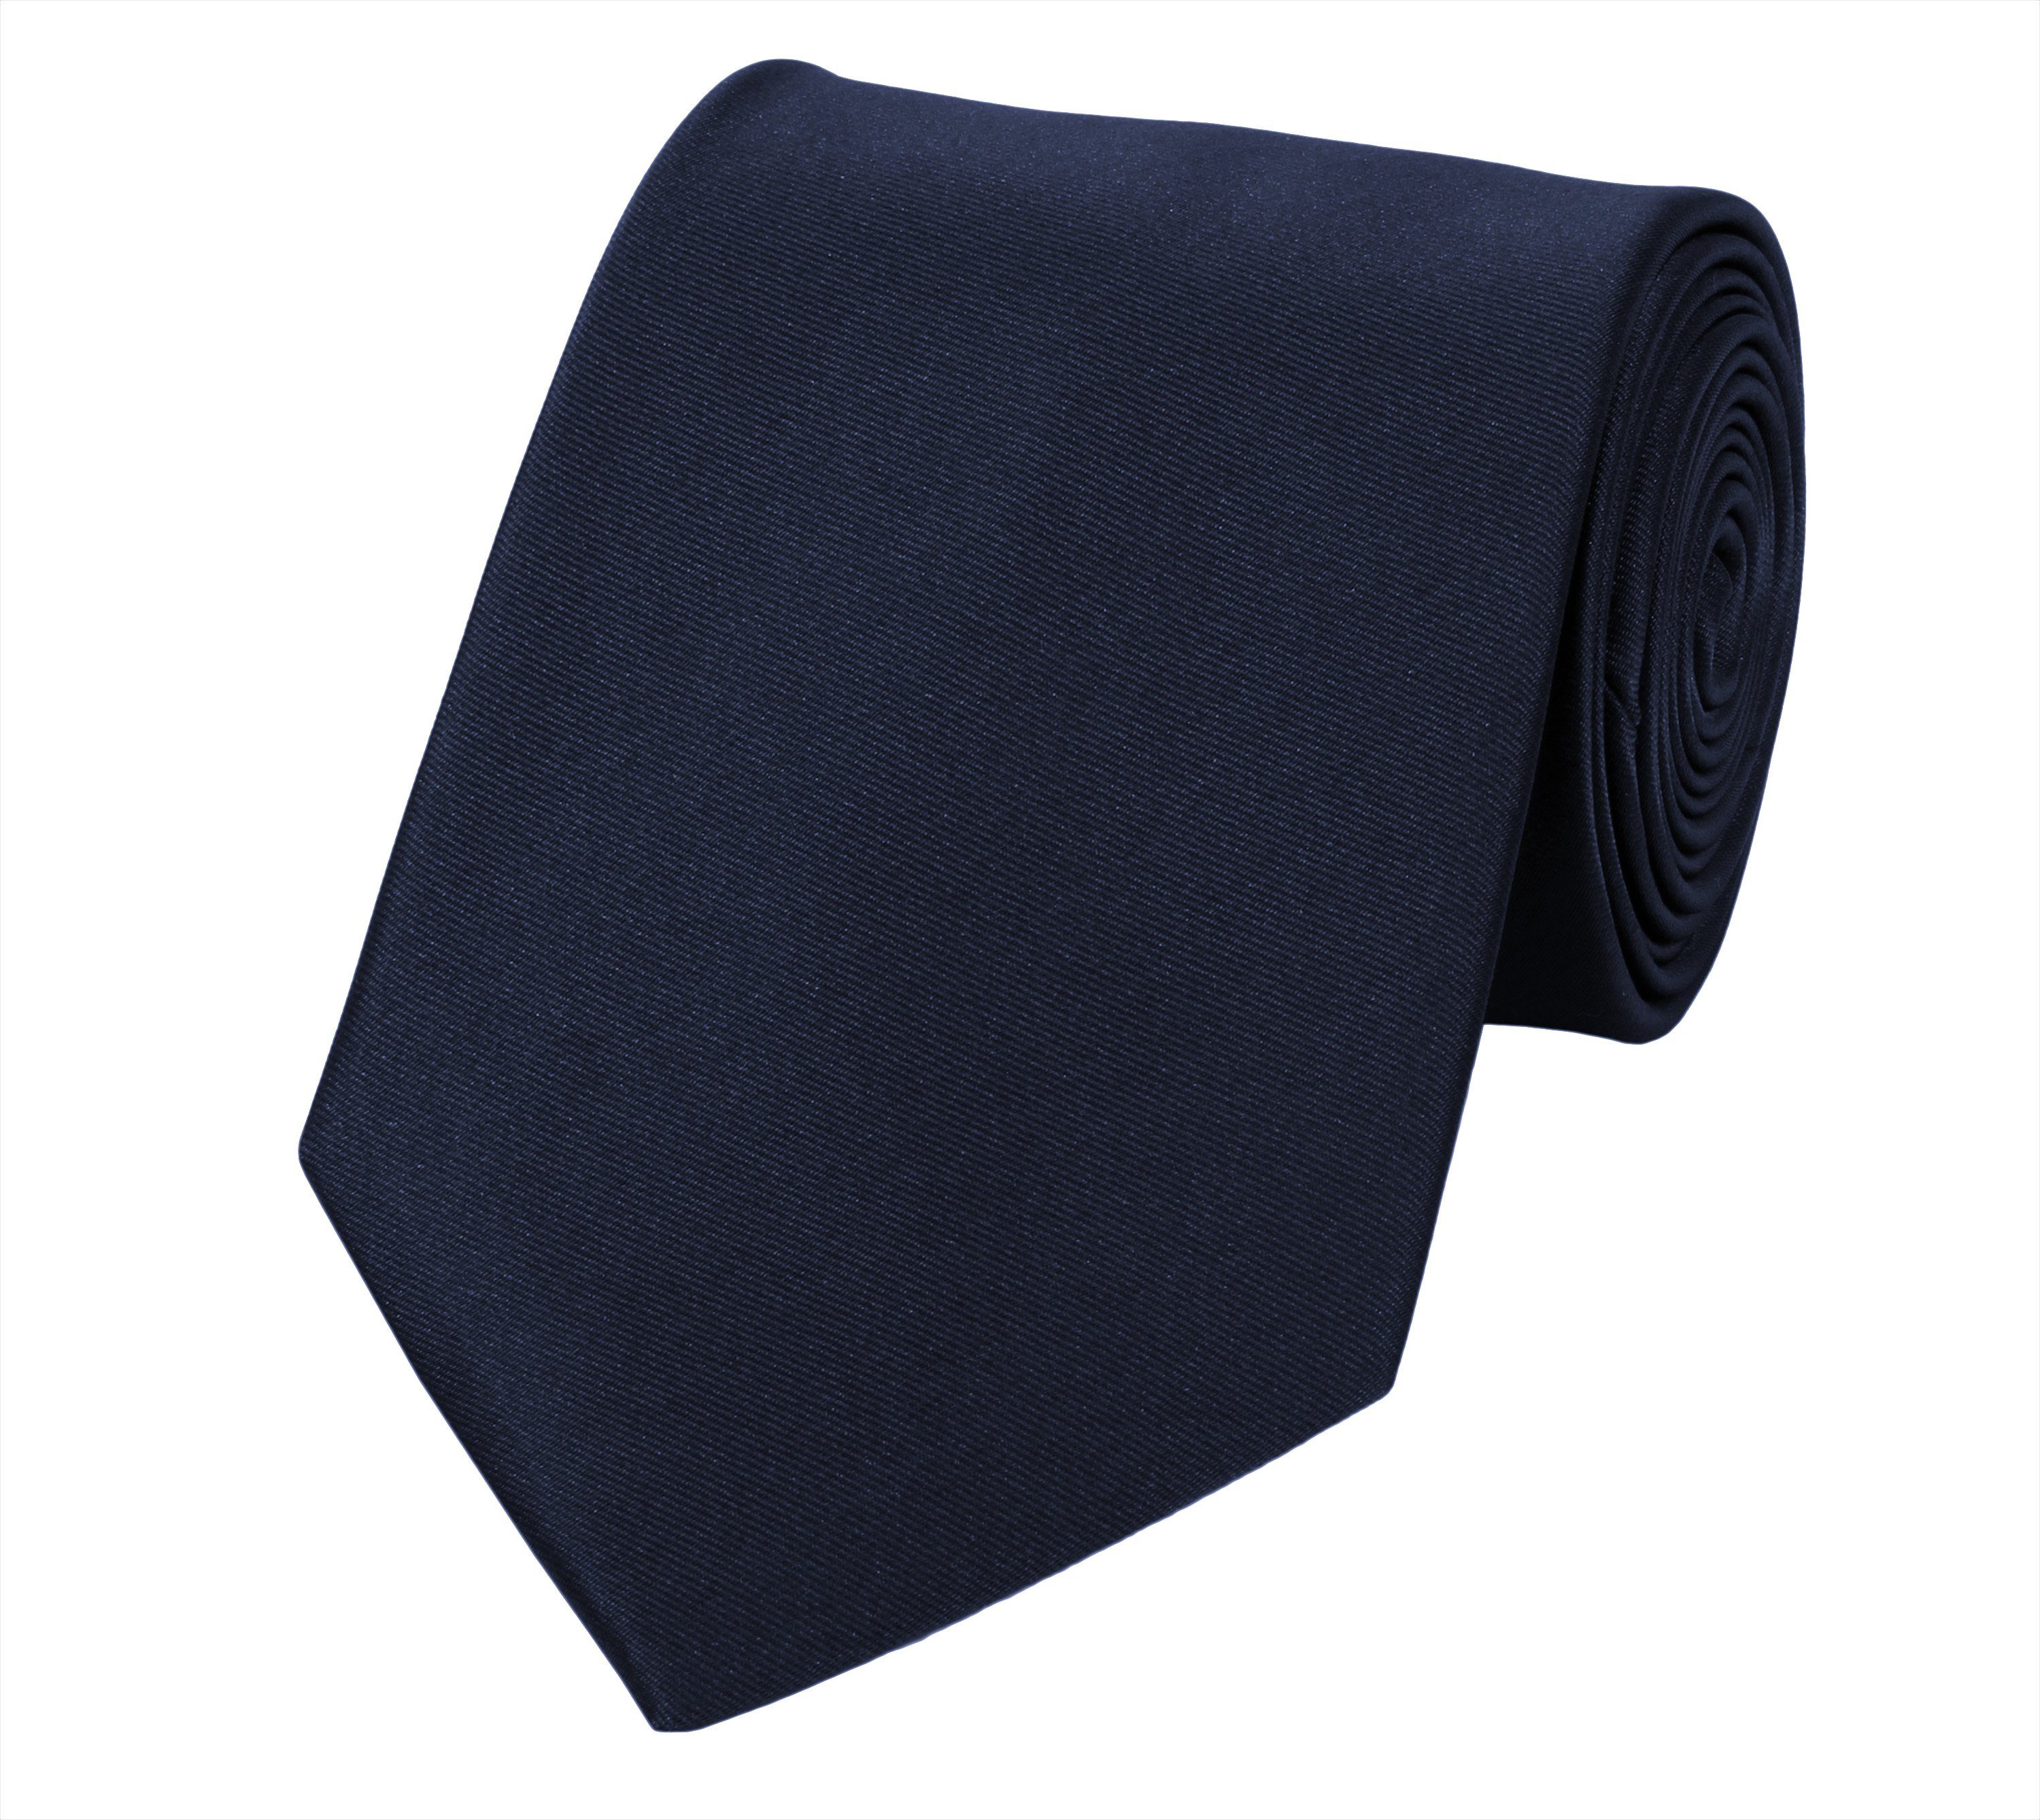 Fabio Farini Krawatte Schwarze Herren Krawatten - dunkle Schlips in 8cm Breite (ohne Box, Unifarben) Breit (8cm), Schwarzblau